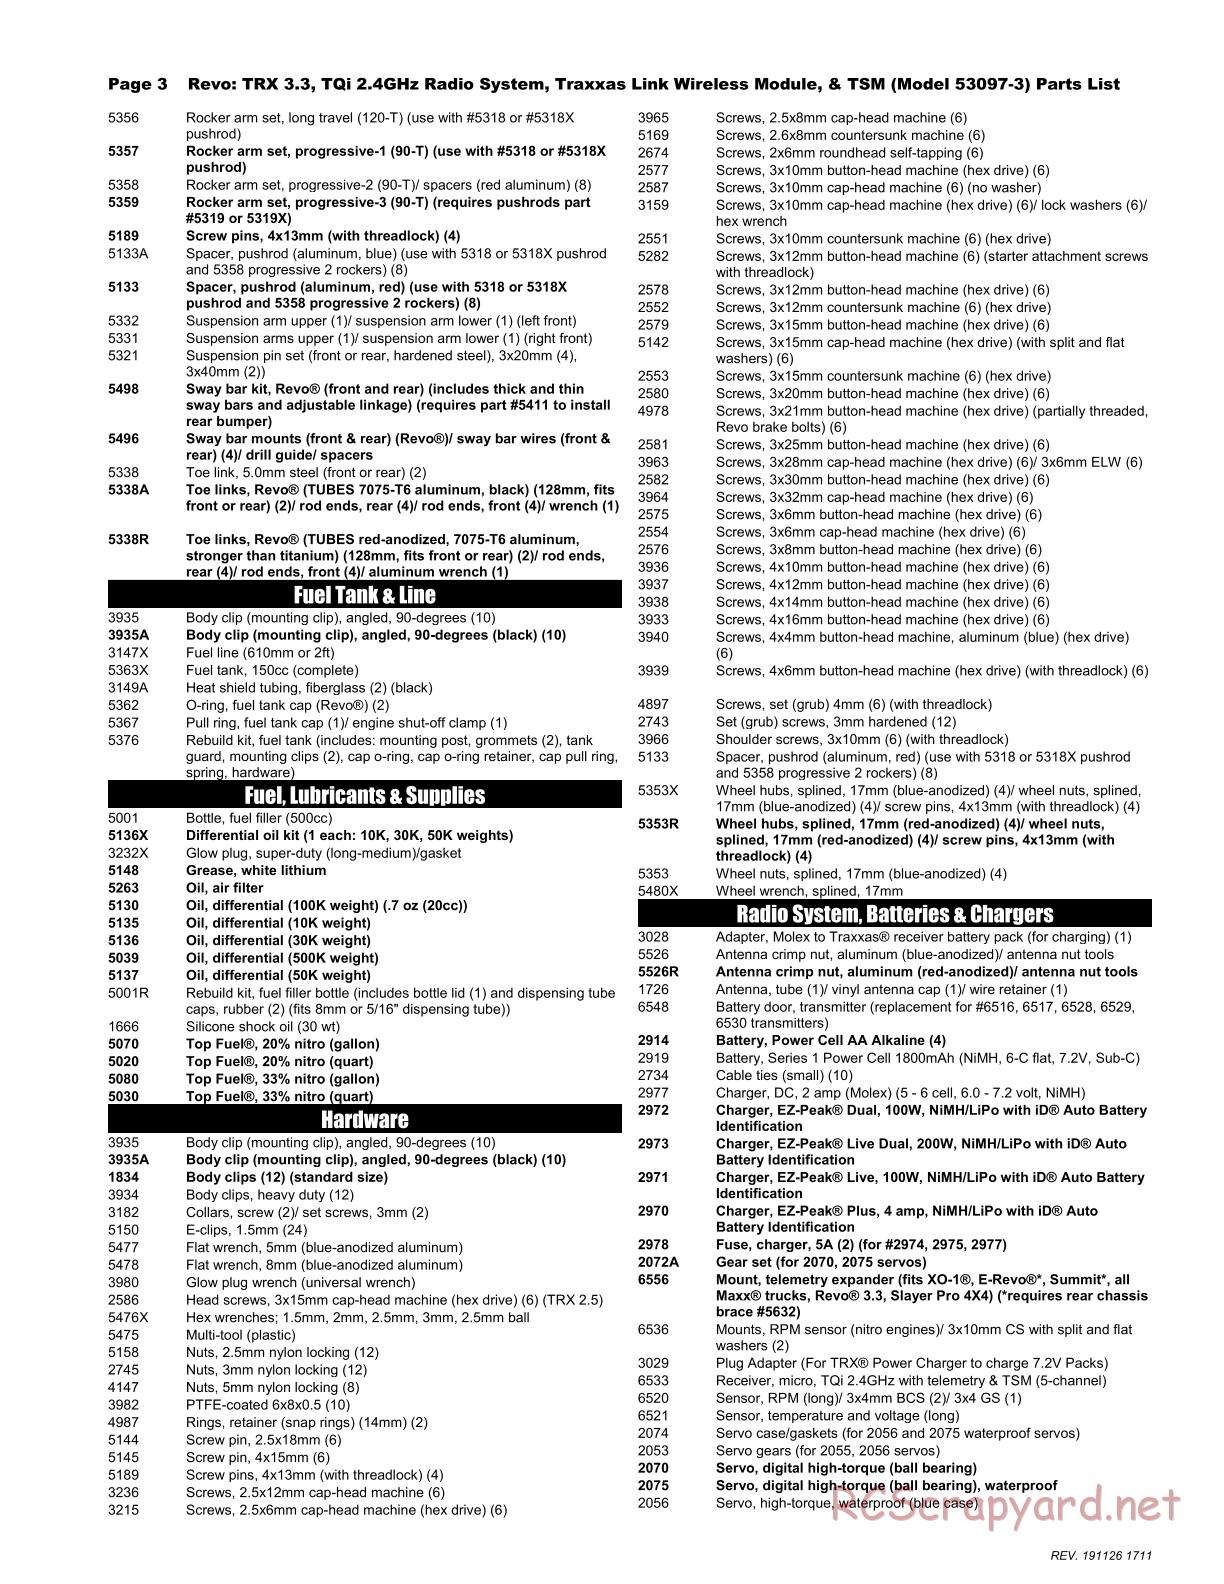 Traxxas - Revo 3.3 TSM - Parts List - Page 3